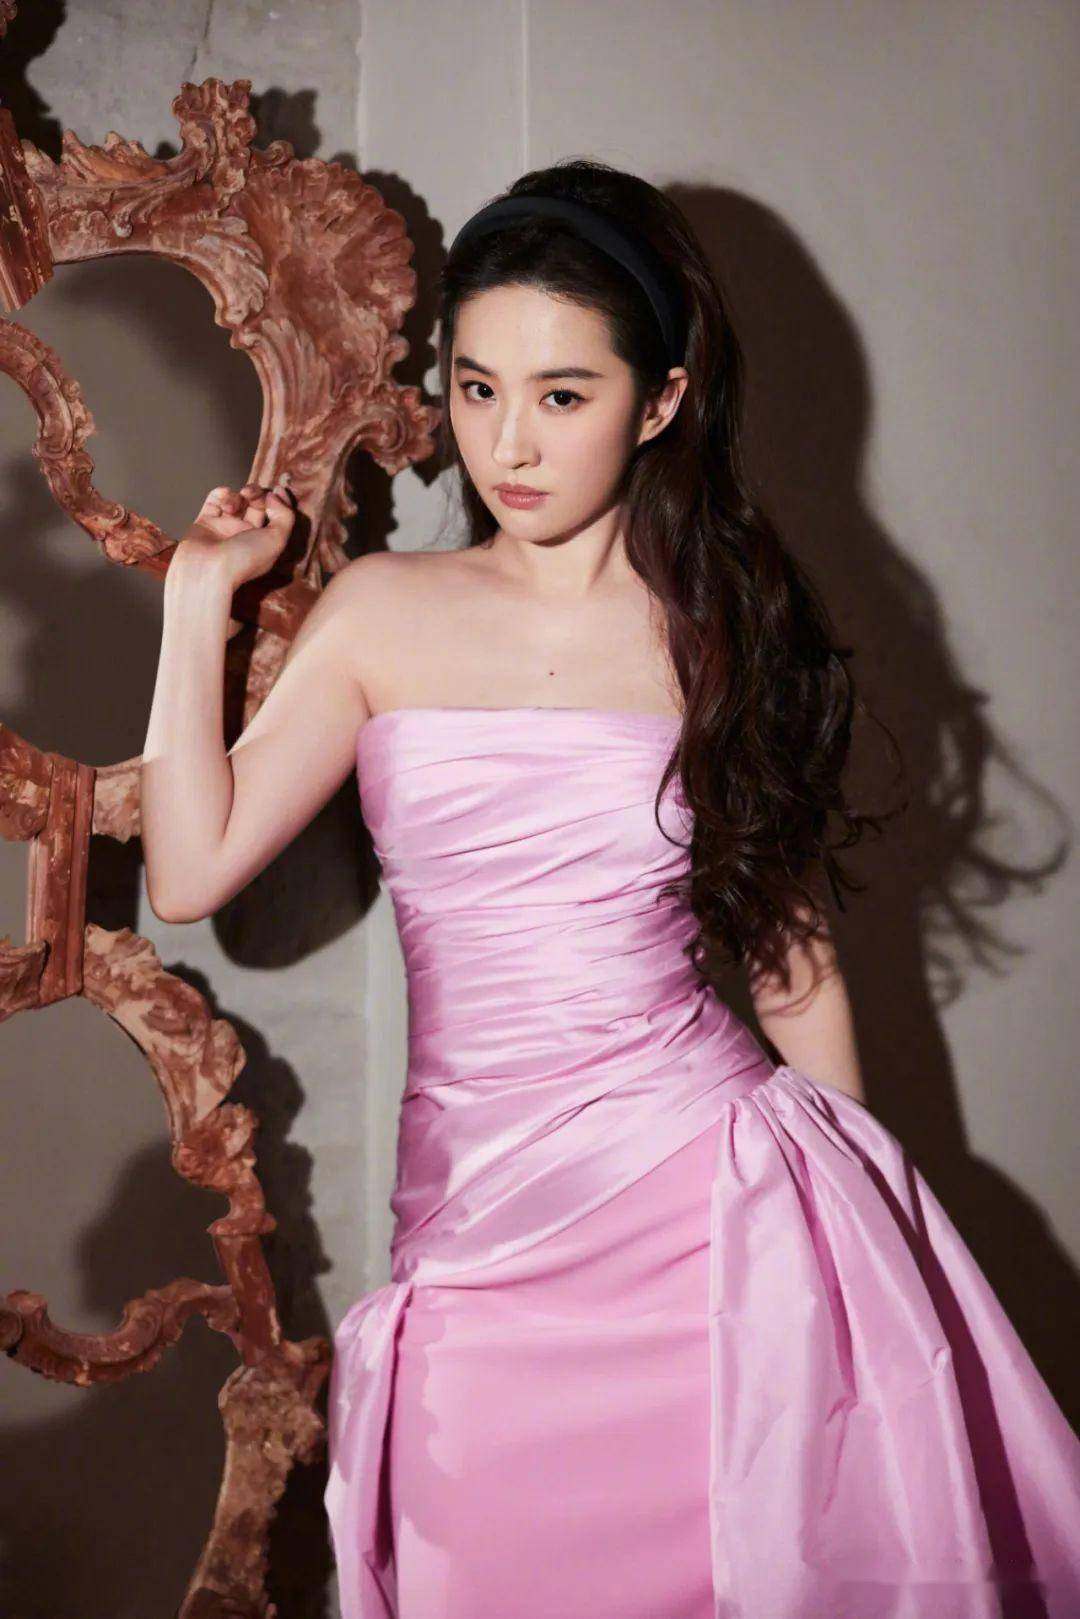 刘亦菲登上《时尚cosmo》杂志6月新刊封面,堪称仙品的美貌,赏心悦目